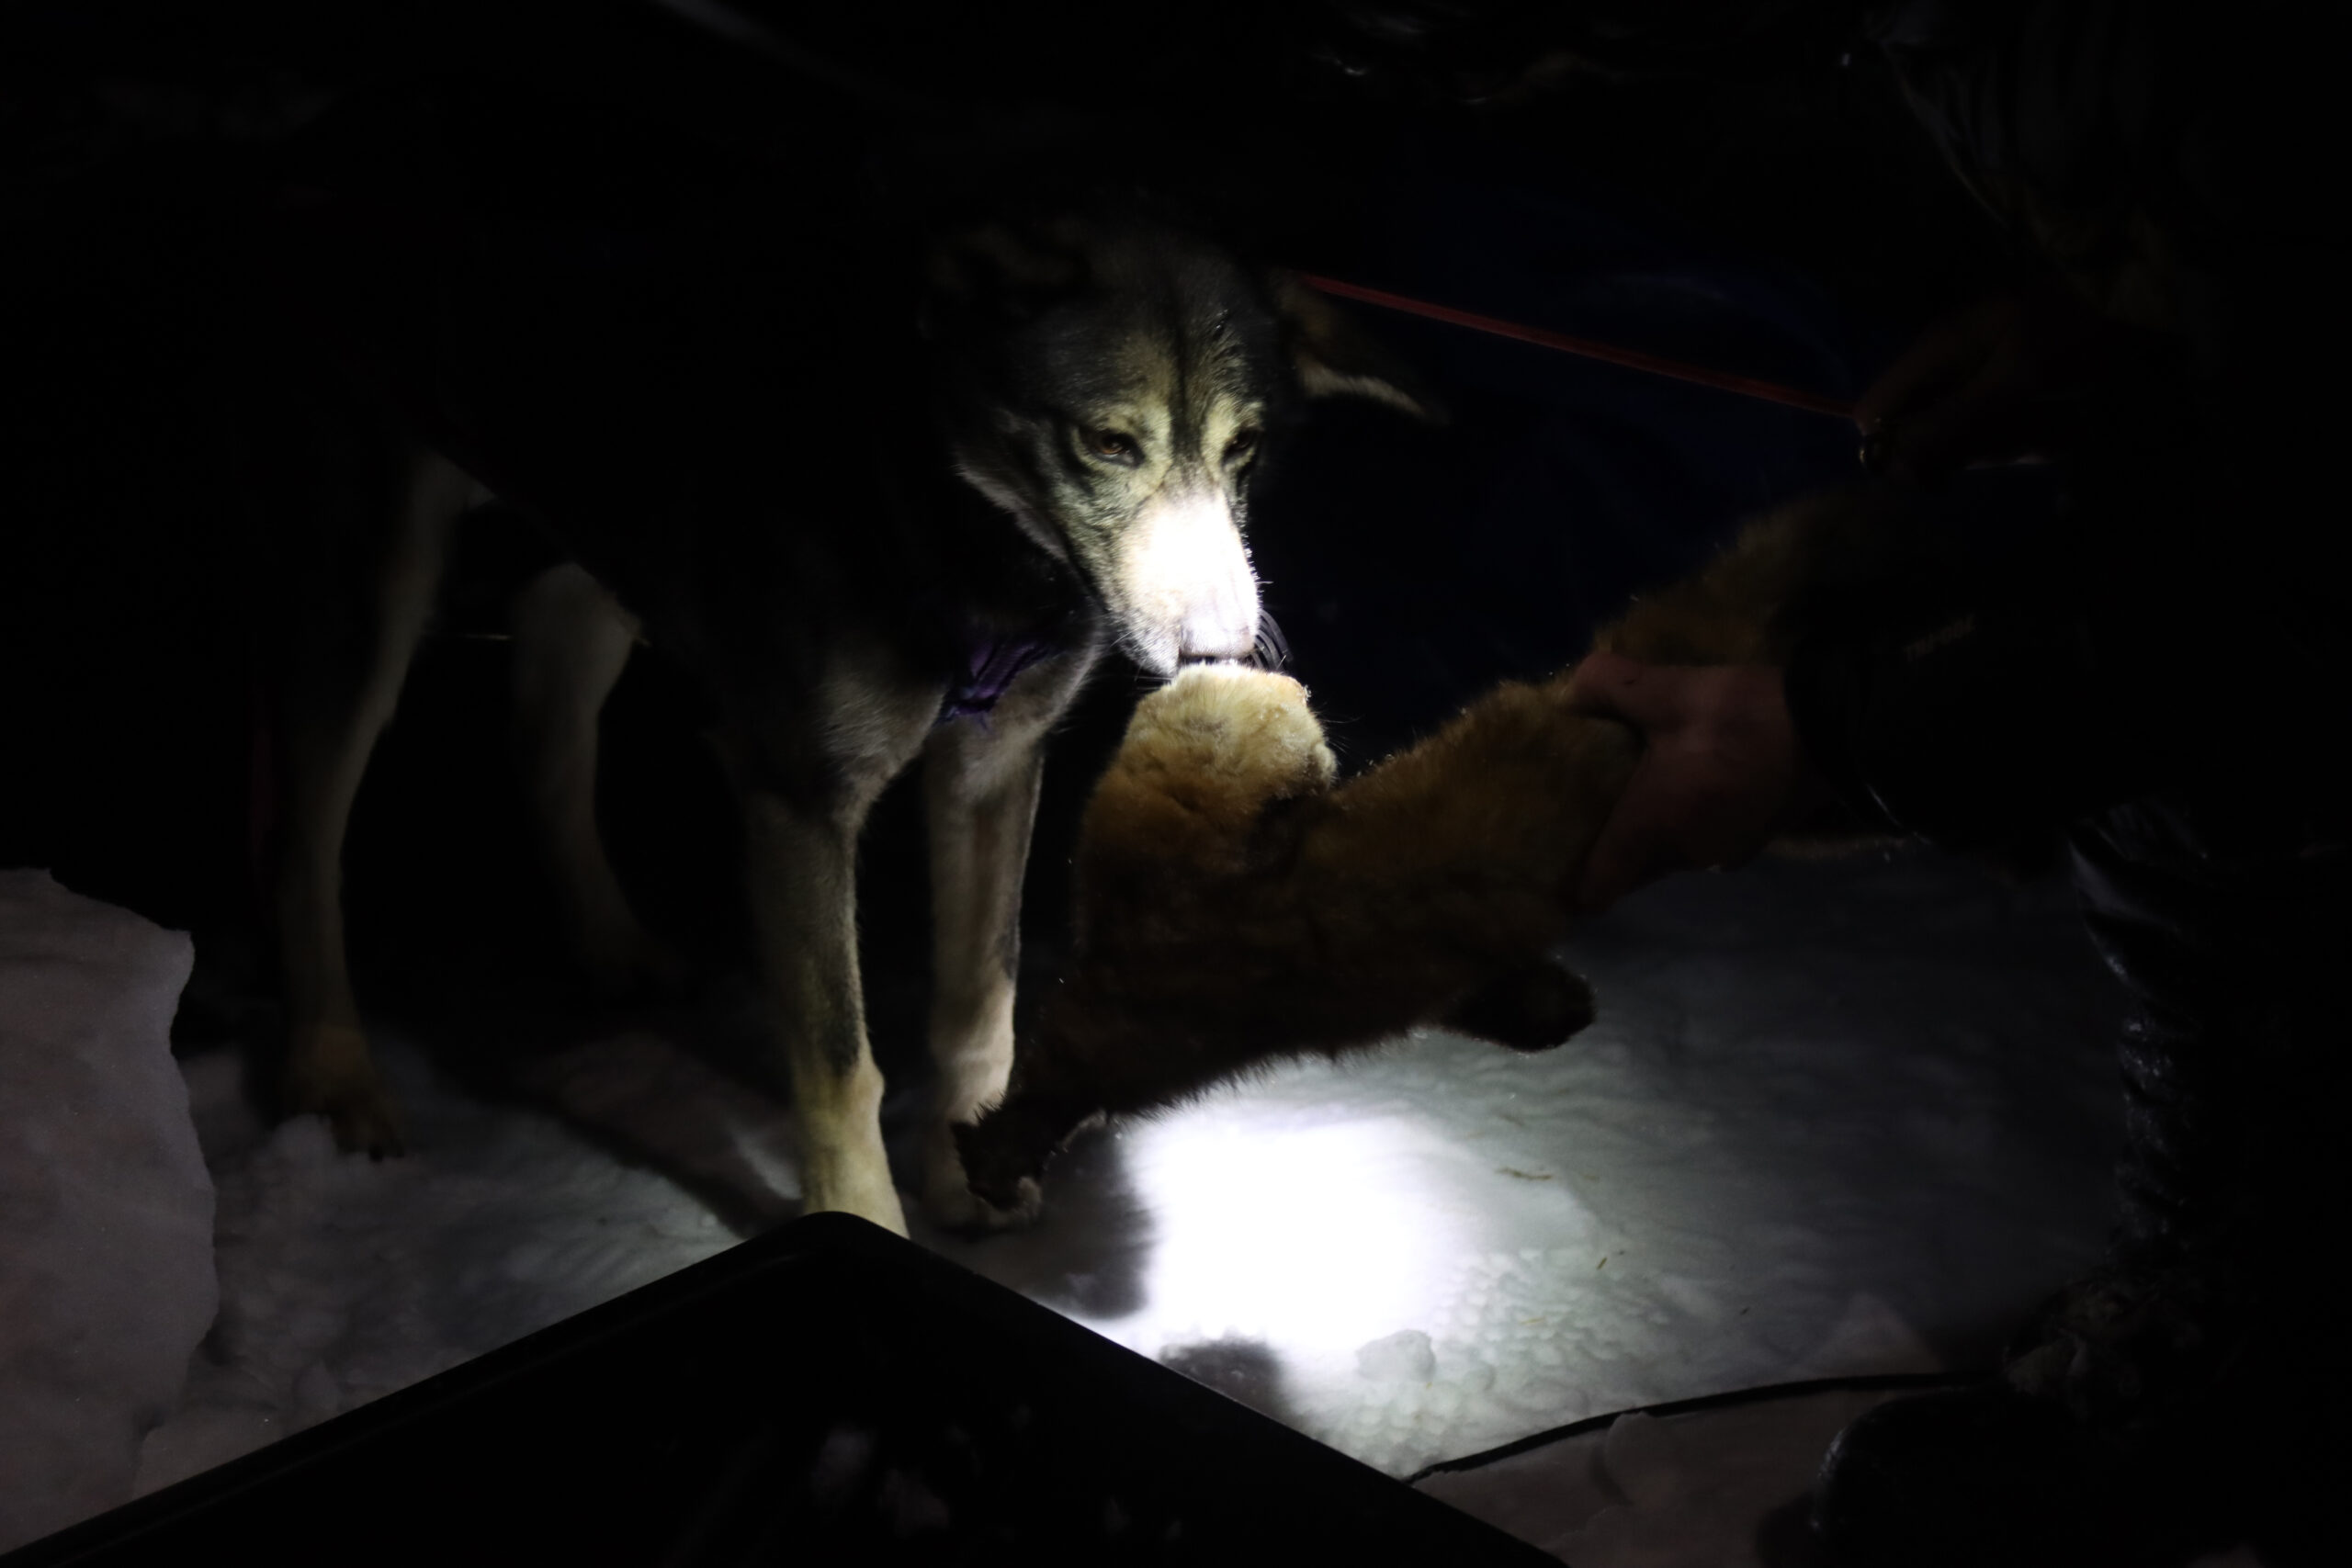 a dog sniffs a frozen marten in the dark